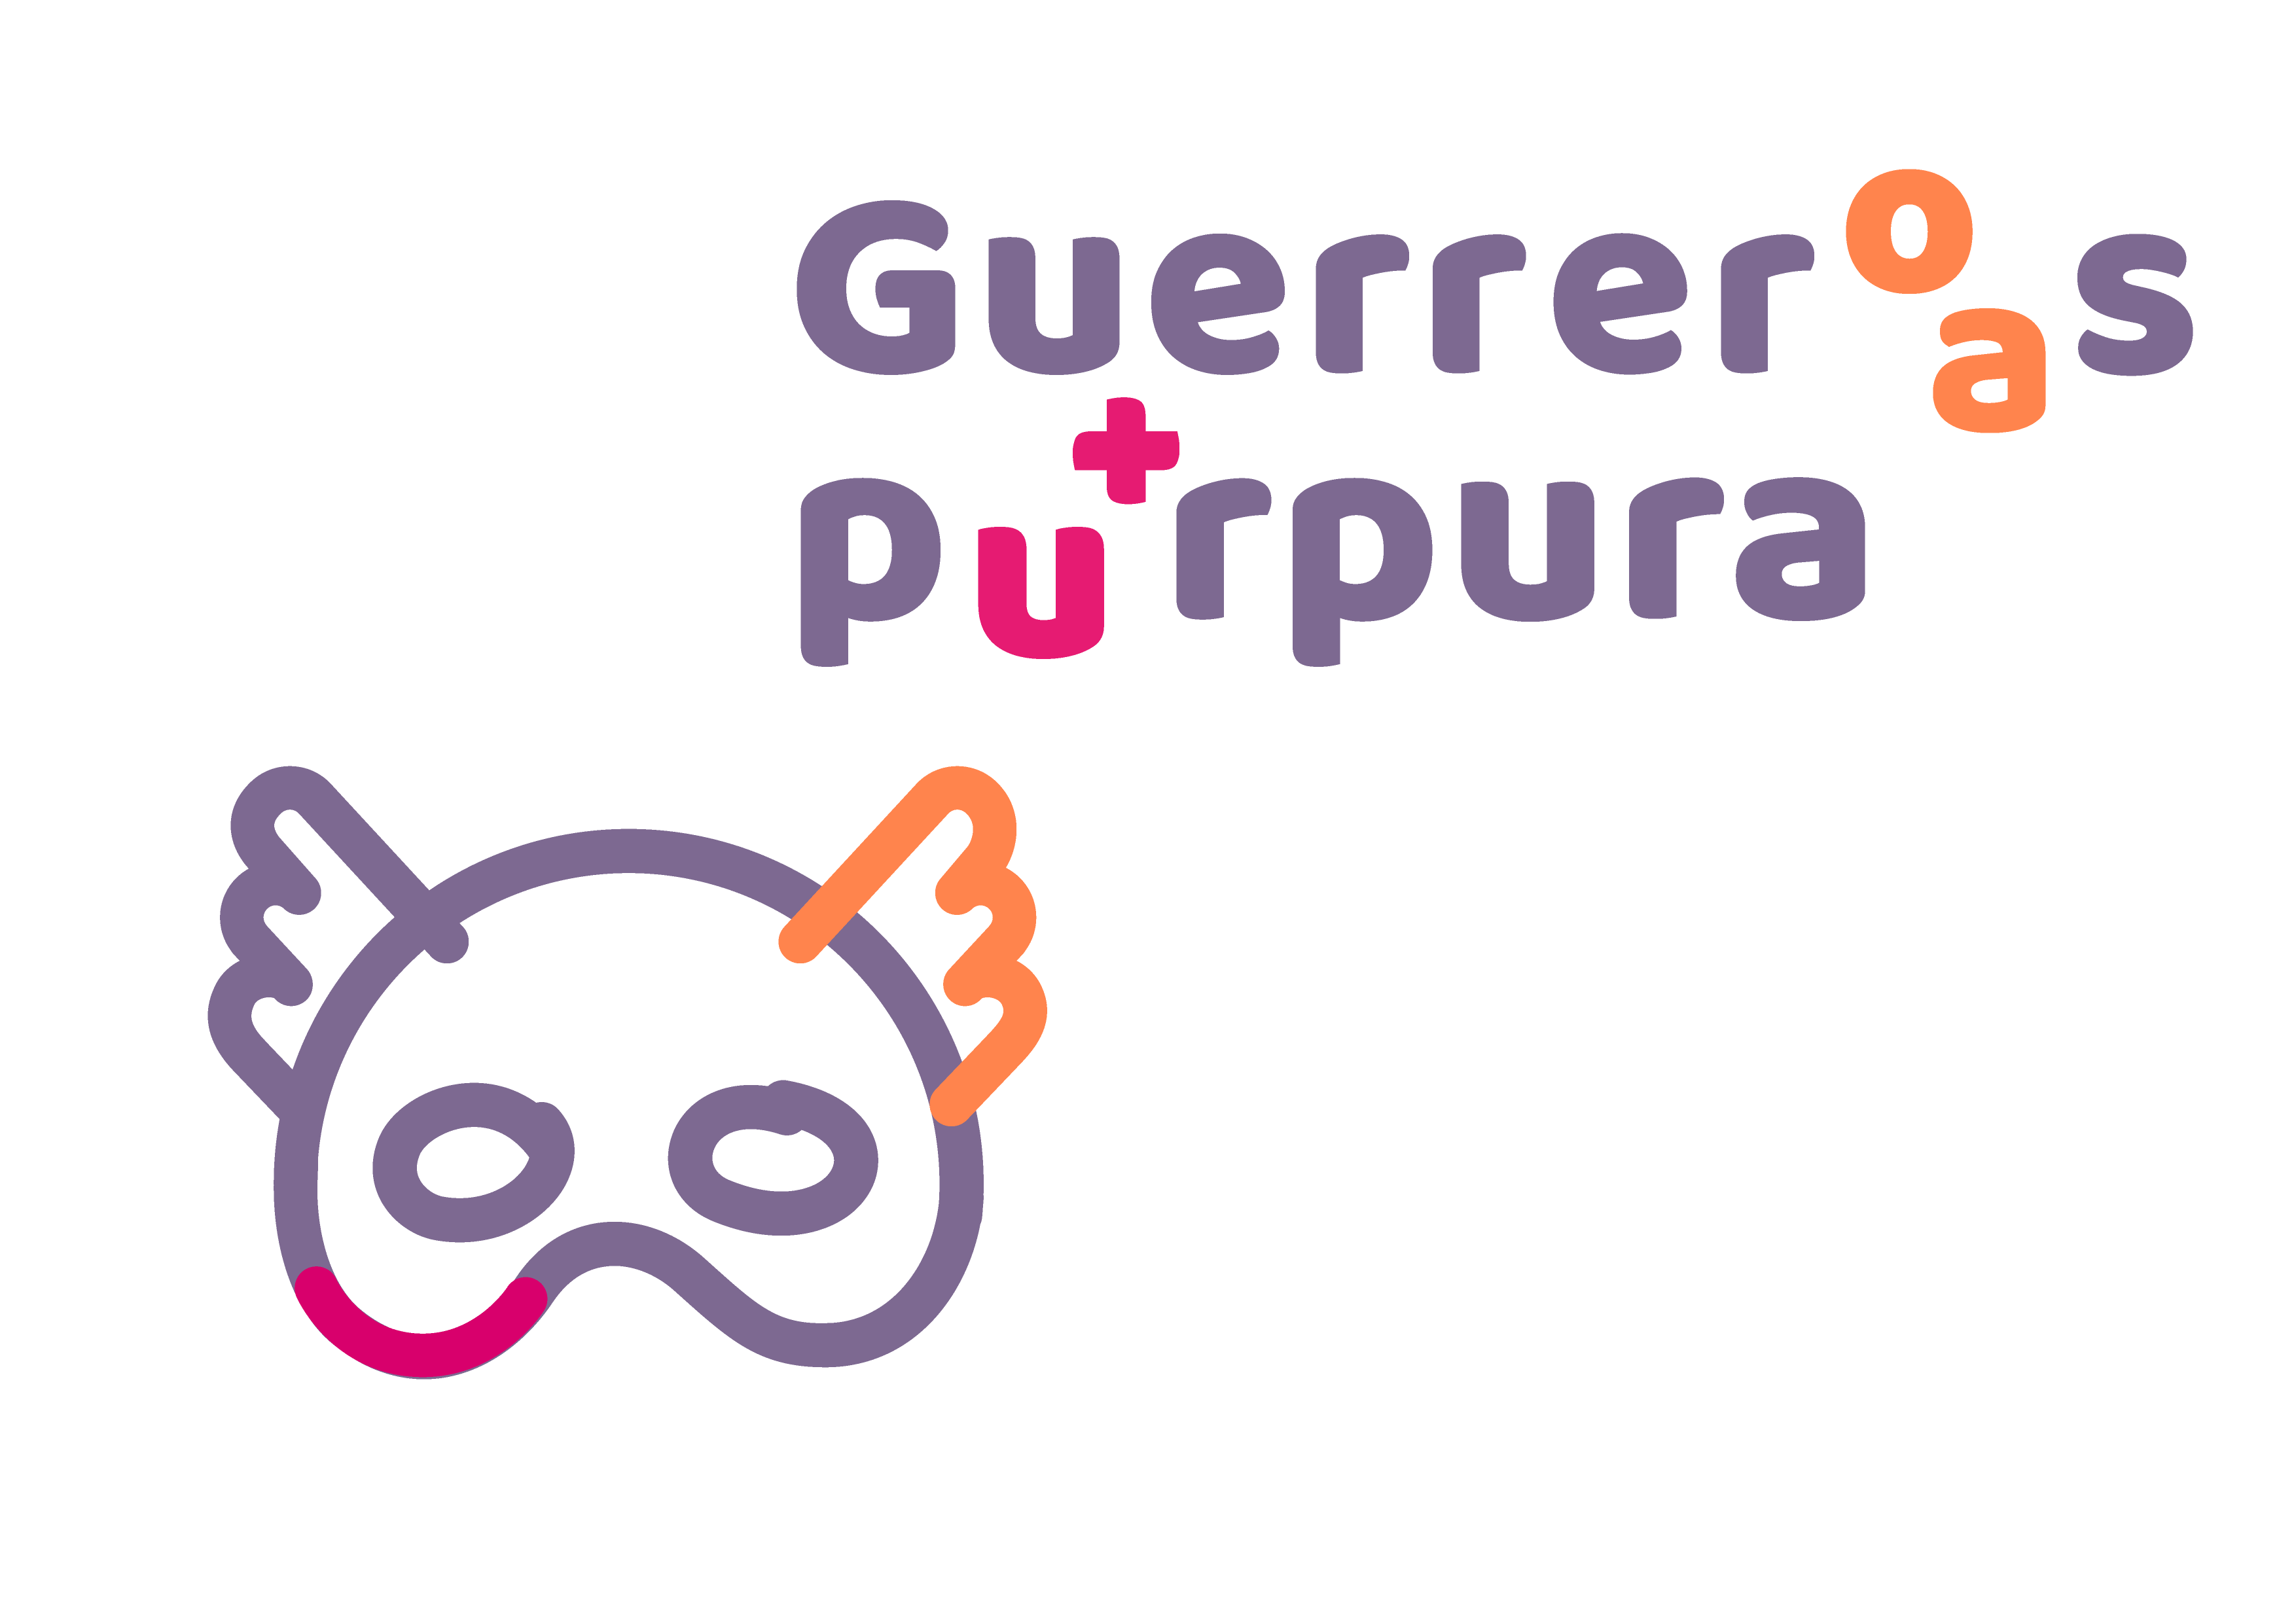 LOGO DE GUERREROS PURPURA